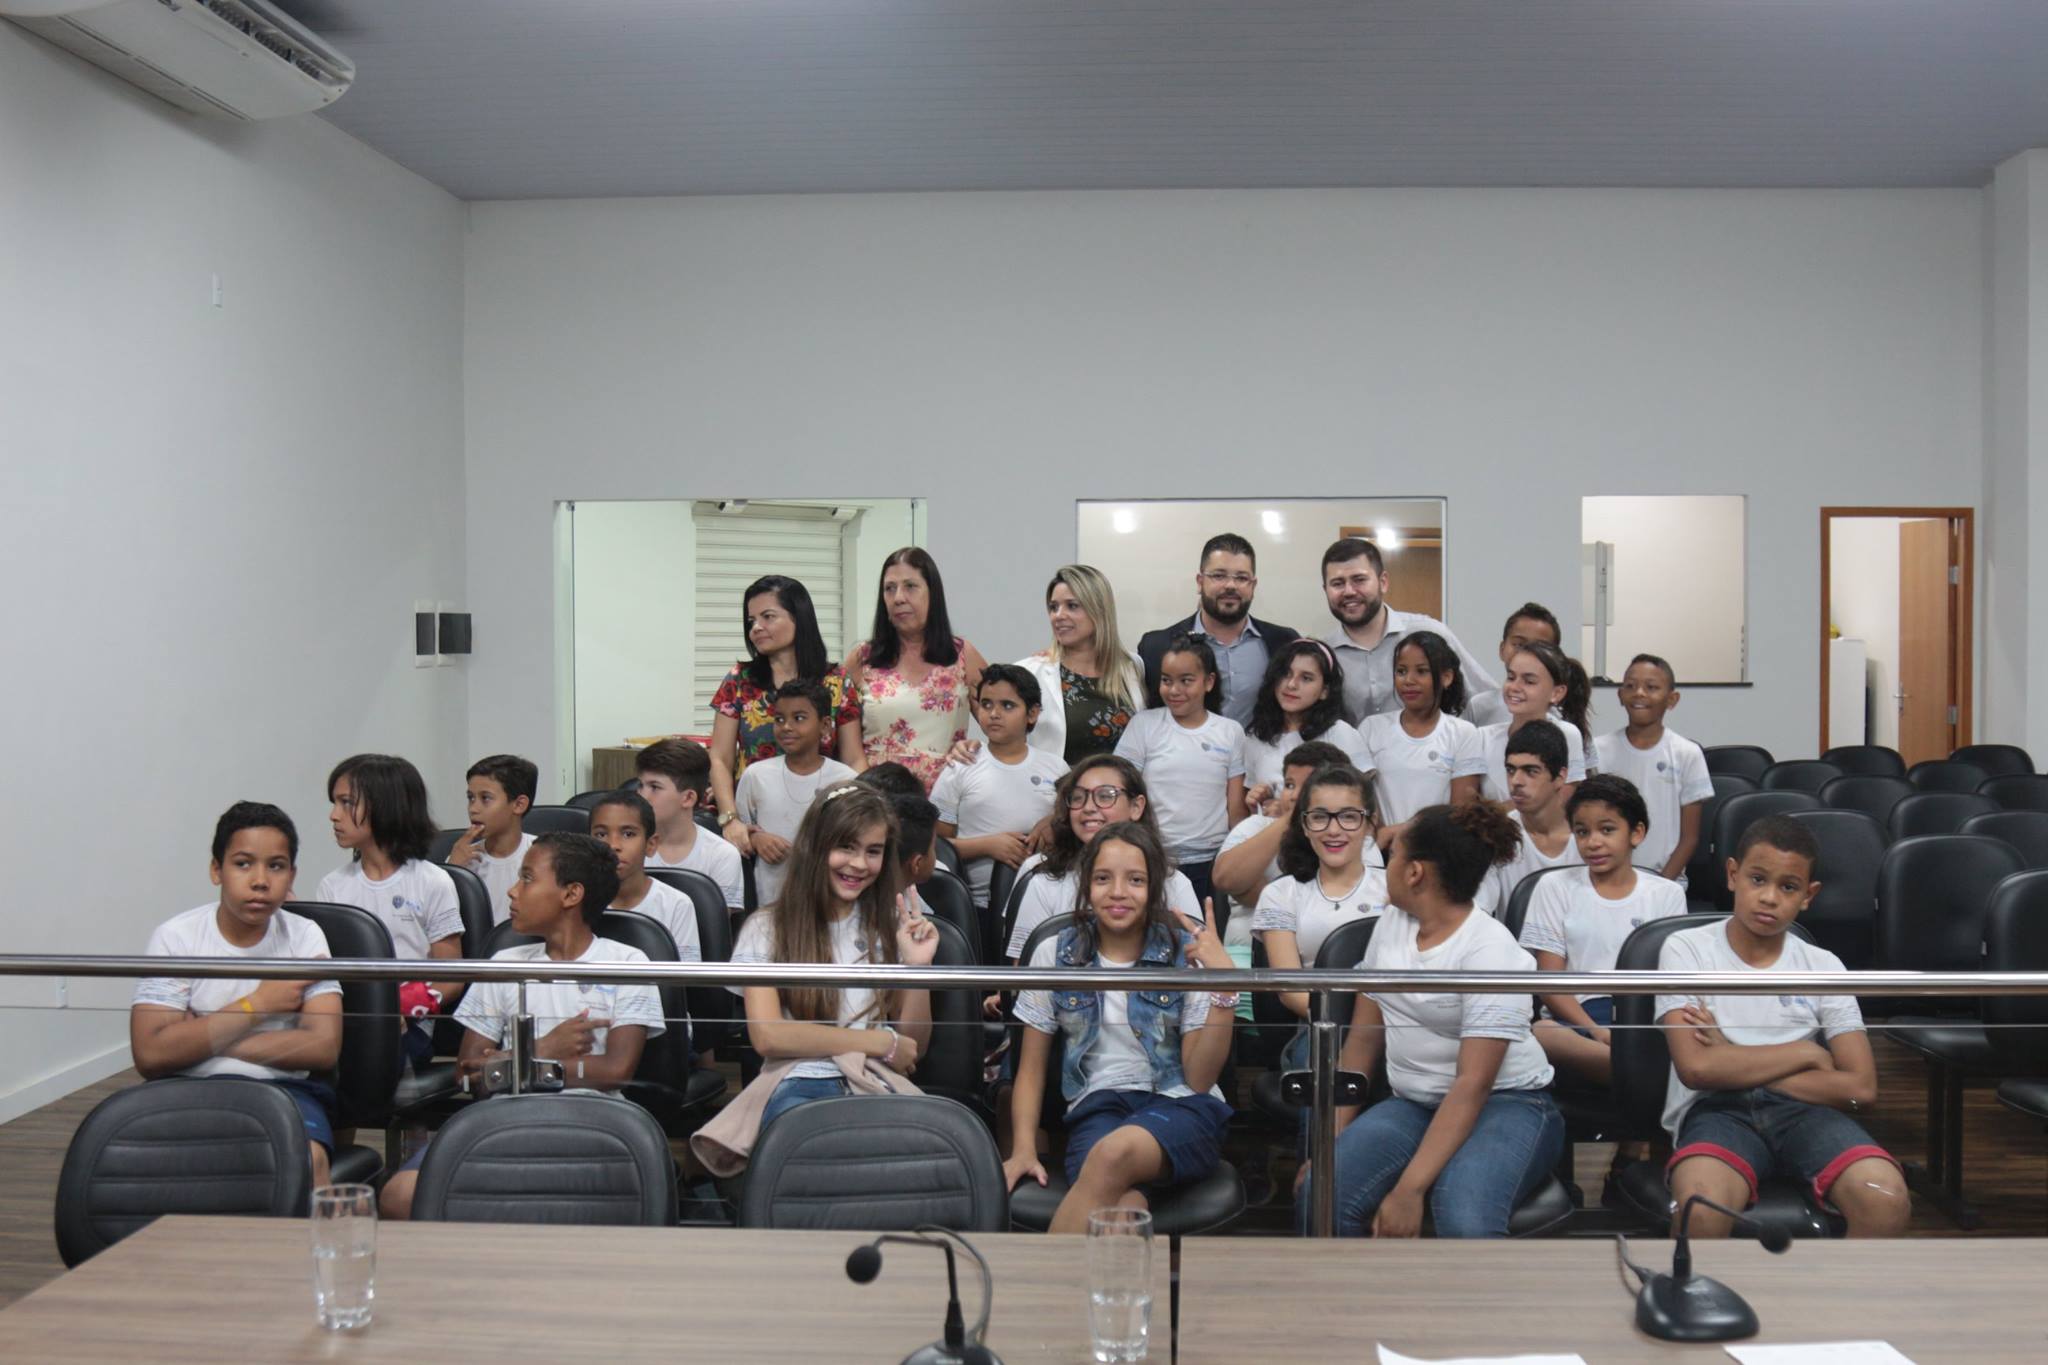 Alunos da Escola Municipal Antônio Constante participam do projeto "Escola do Legislativo"